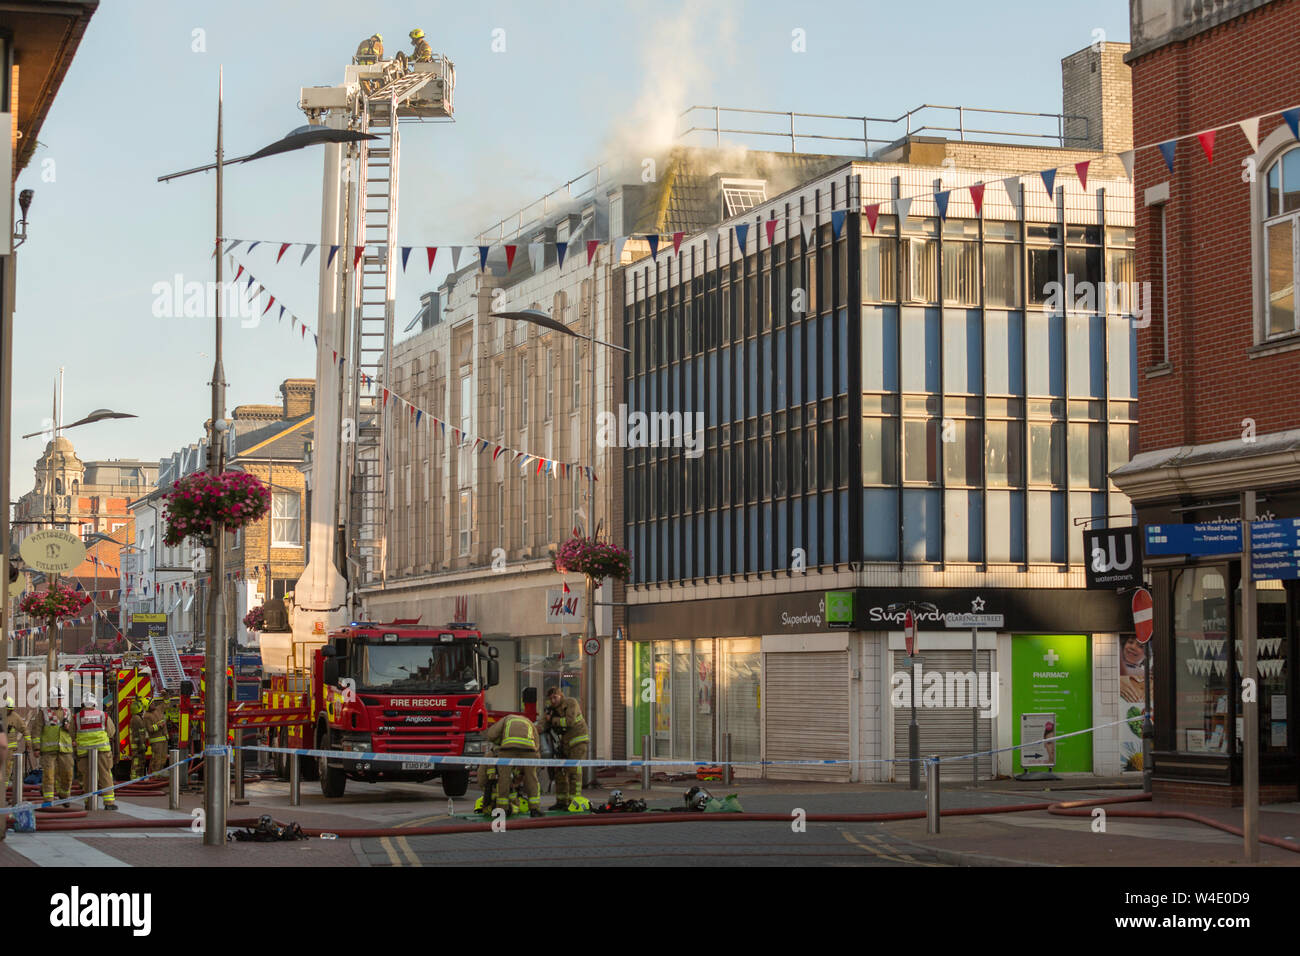 Southend On Sea, Großbritannien. 22. Juli 2019. Hat sich ein Brand über H&M Store in der High Street. Mindestens sechs Brandbekämpfungseinrichtungen sind auf der Szene mit Feuer Besatzungen arbeiten, um den Brand zu löschen. Penelope Barritt/Alamy leben Nachrichten Stockfoto